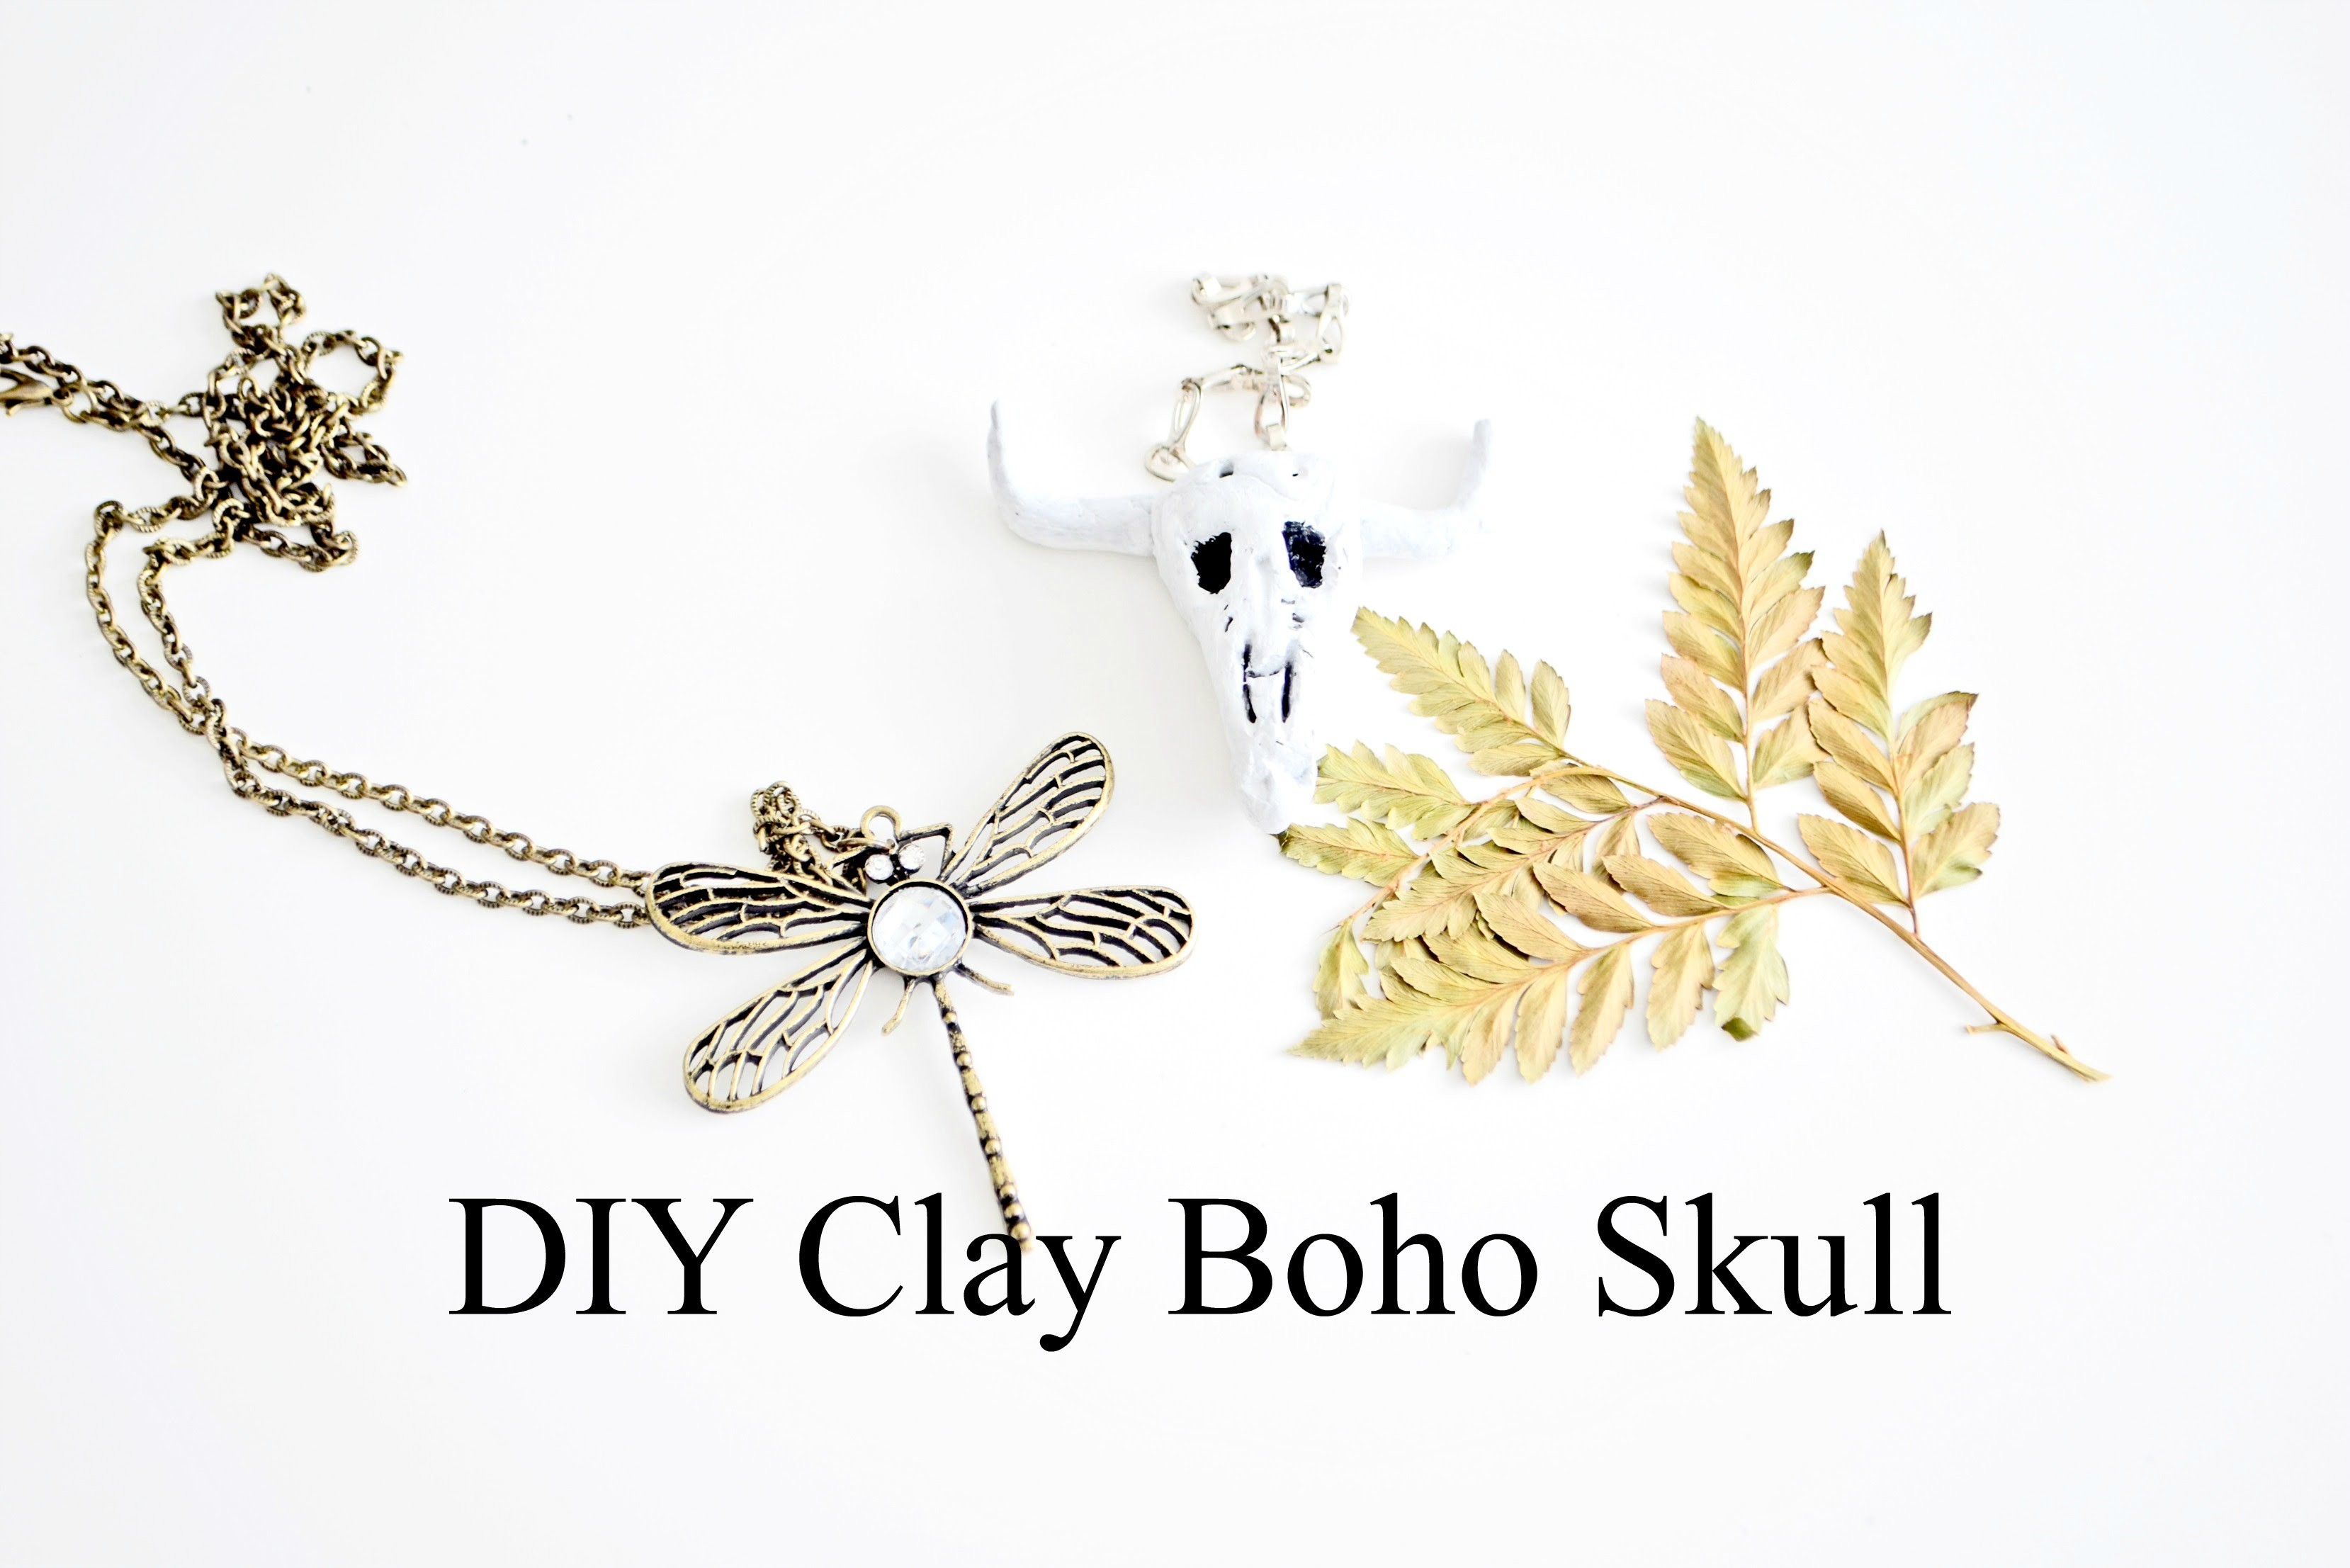 DIY Dekoracja w stylu Boho -  Clay Boho Skull